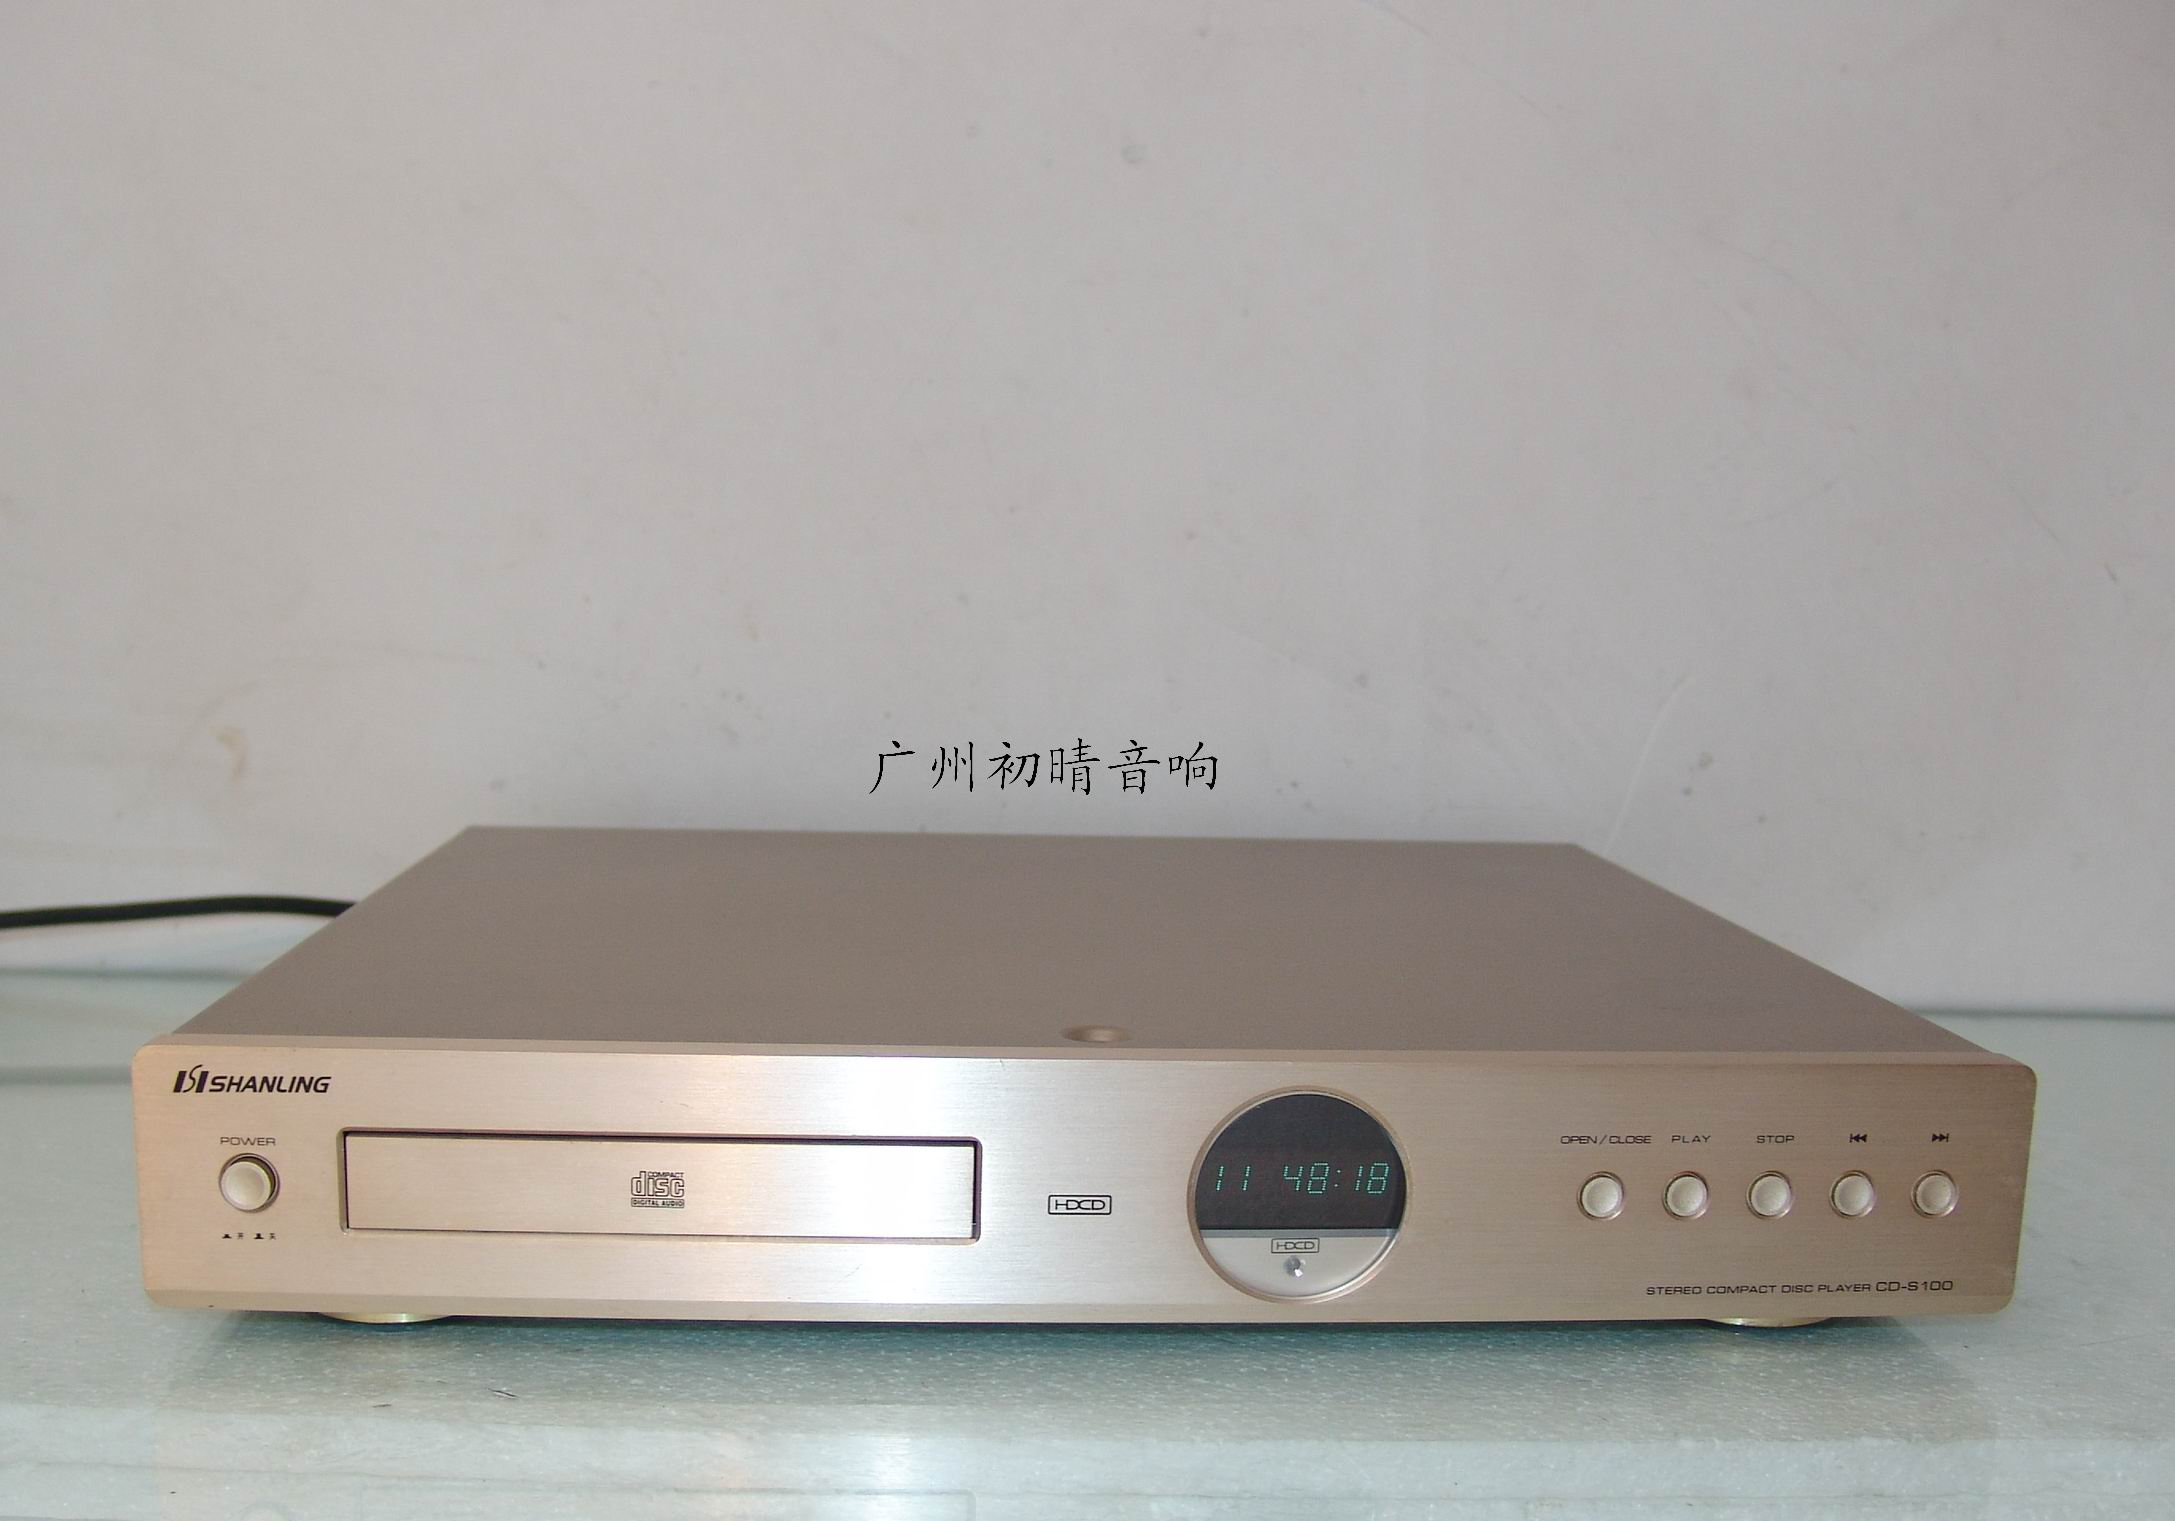 金色国产精品山灵发烧CD机,CD-S100|一淘网